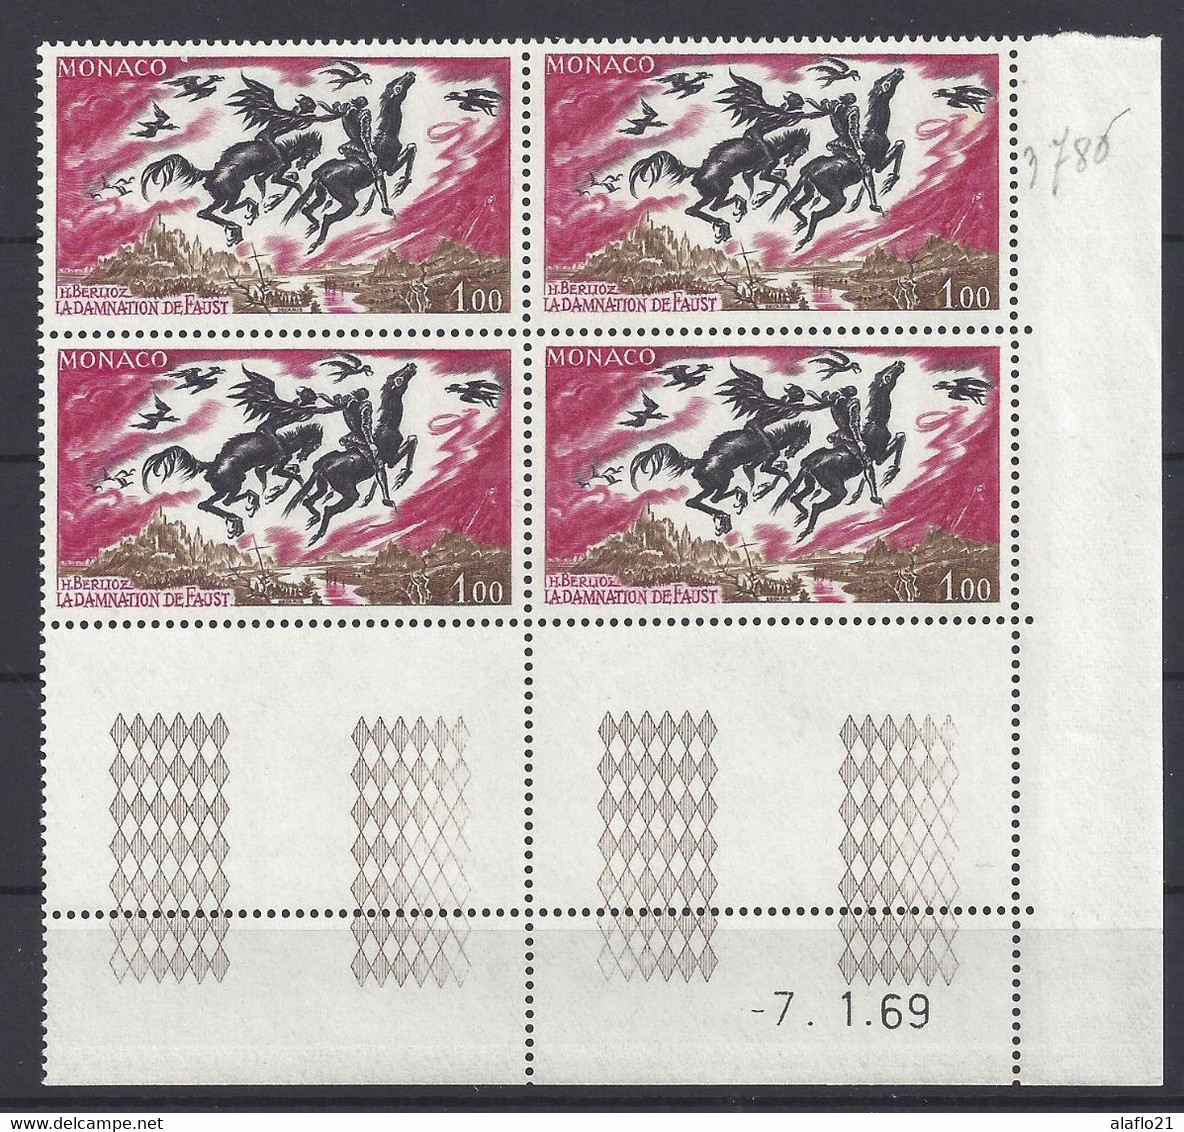 MONACO N° 786 - Bloc De 4 COIN DATE - NEUF** - BERLIOZ - DAMNATION DE FAUST - 7/1/69 - Neufs